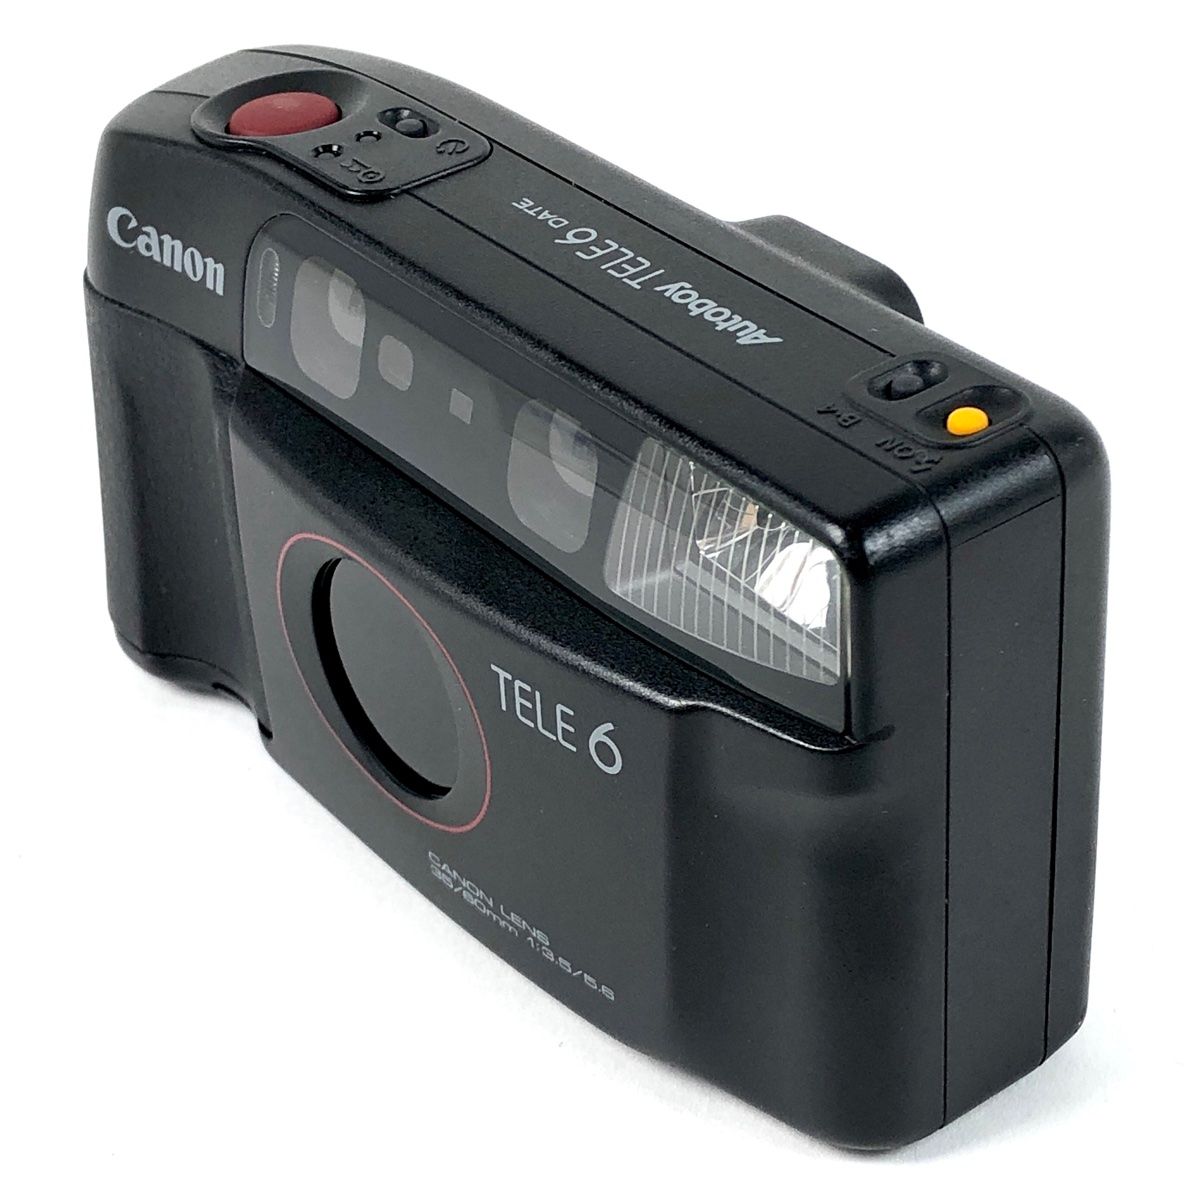 キヤノン Canon Autoboy TELE6 DATE オートボーイ フィルム コンパクト